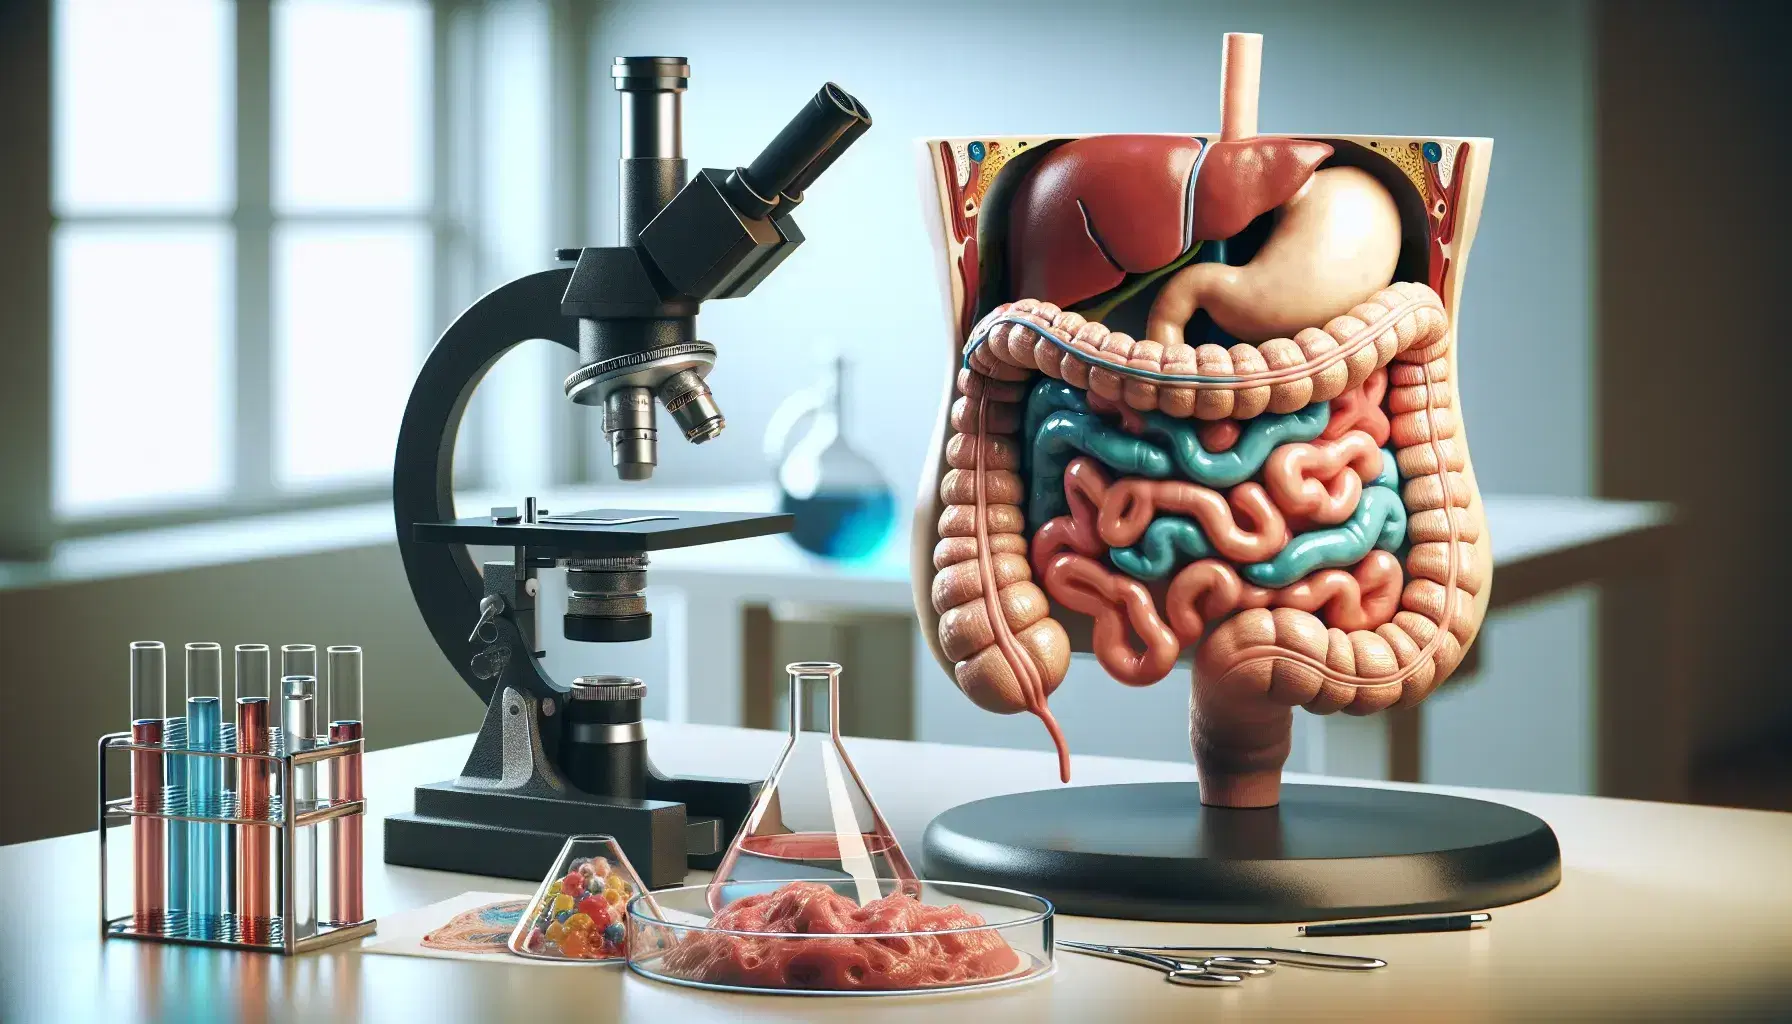 Modelo anatómico tridimensional del sistema digestivo humano en un laboratorio con microscopio y probetas de colores en el fondo.